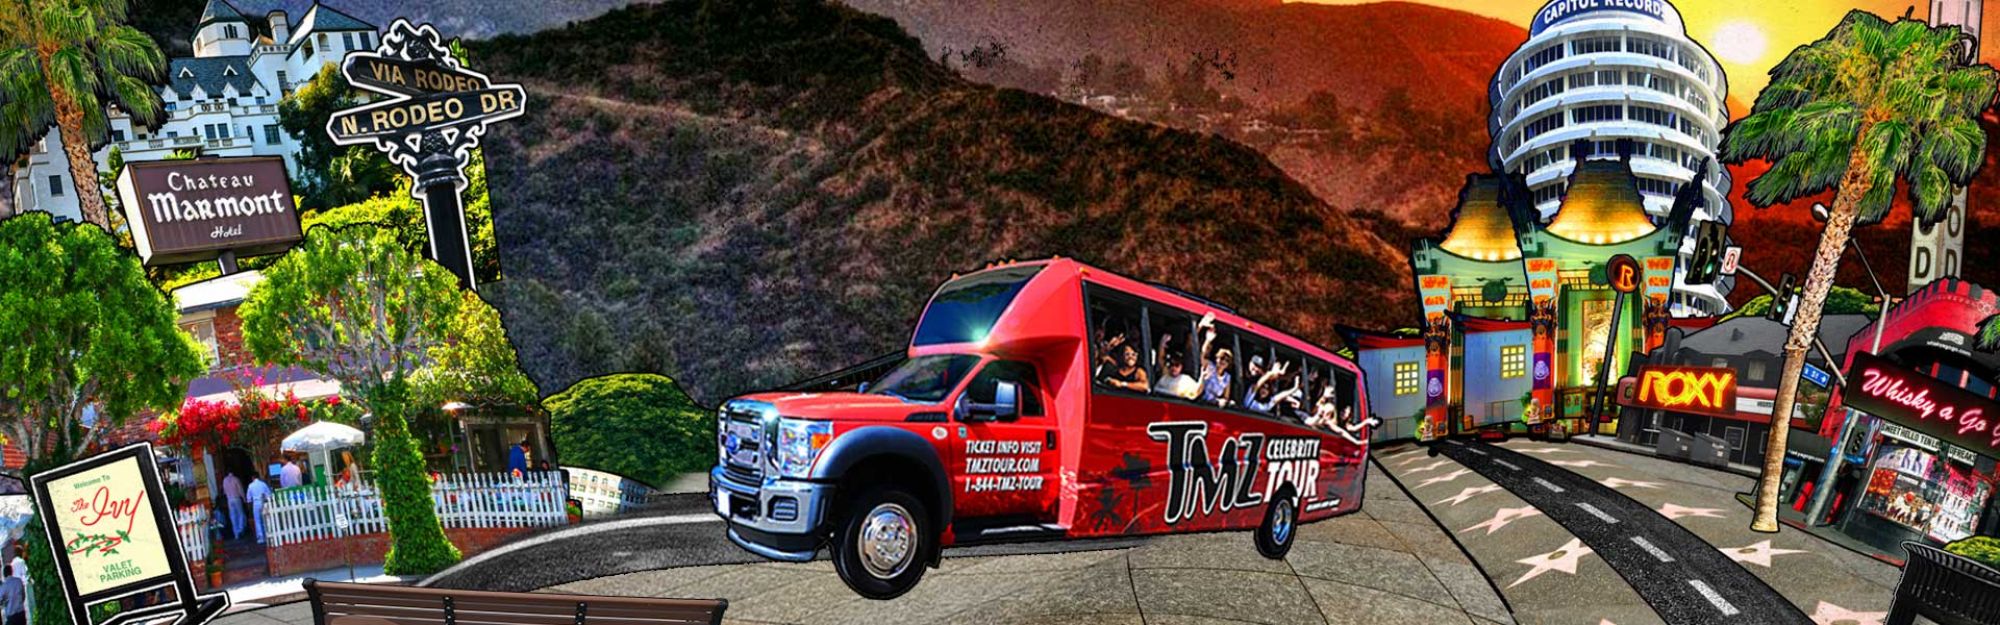 TMZ Celebrity Tour Los Angeles Big Bus Tours